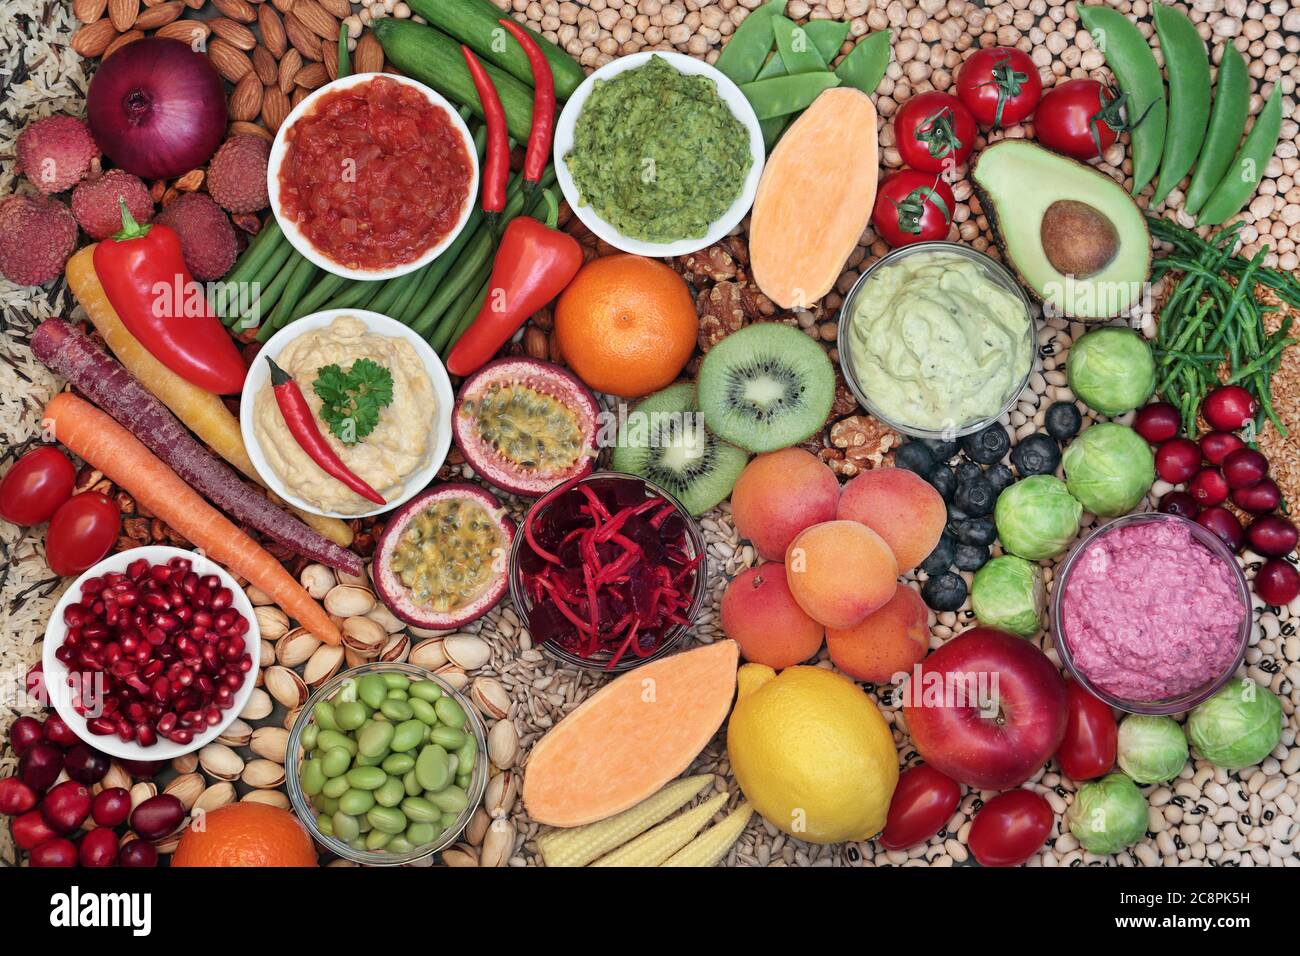 Aliments santé pour les végétaliens manger avec des aliments riches en protéines, anthocyanes, vitamines, minéraux, oméga 3, glucides intelligents, antioxydants et fibres. Banque D'Images